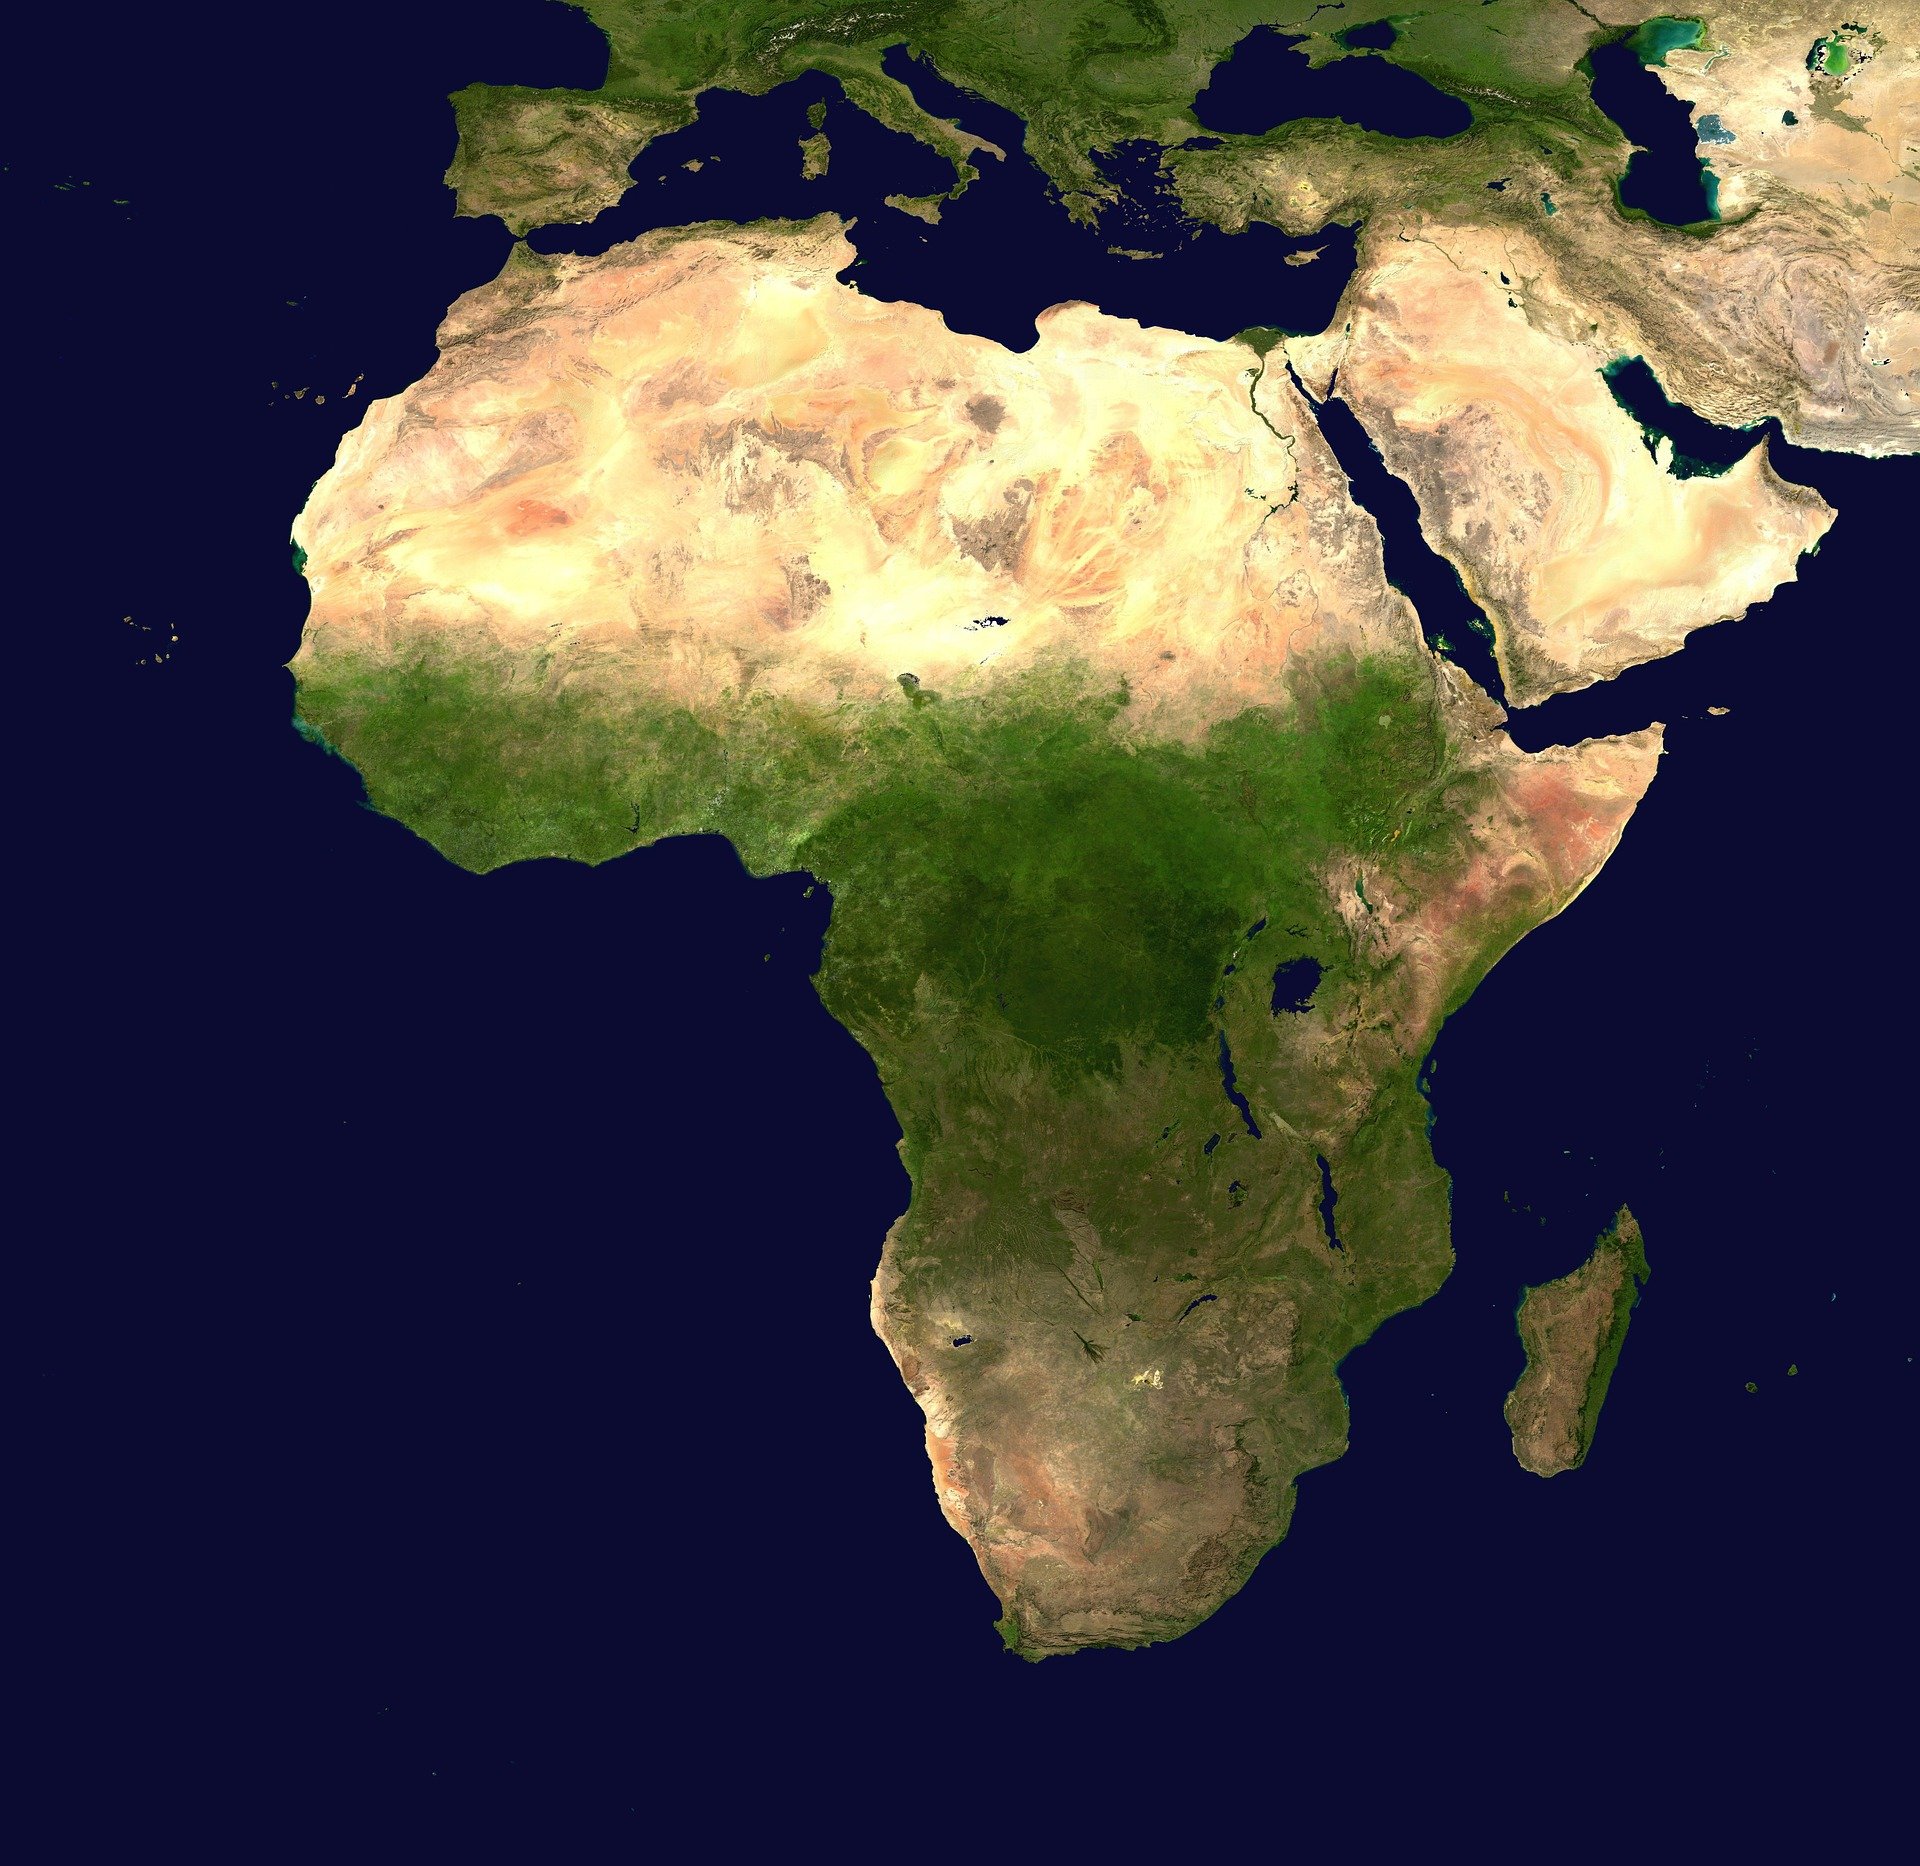 Africa-UniNet